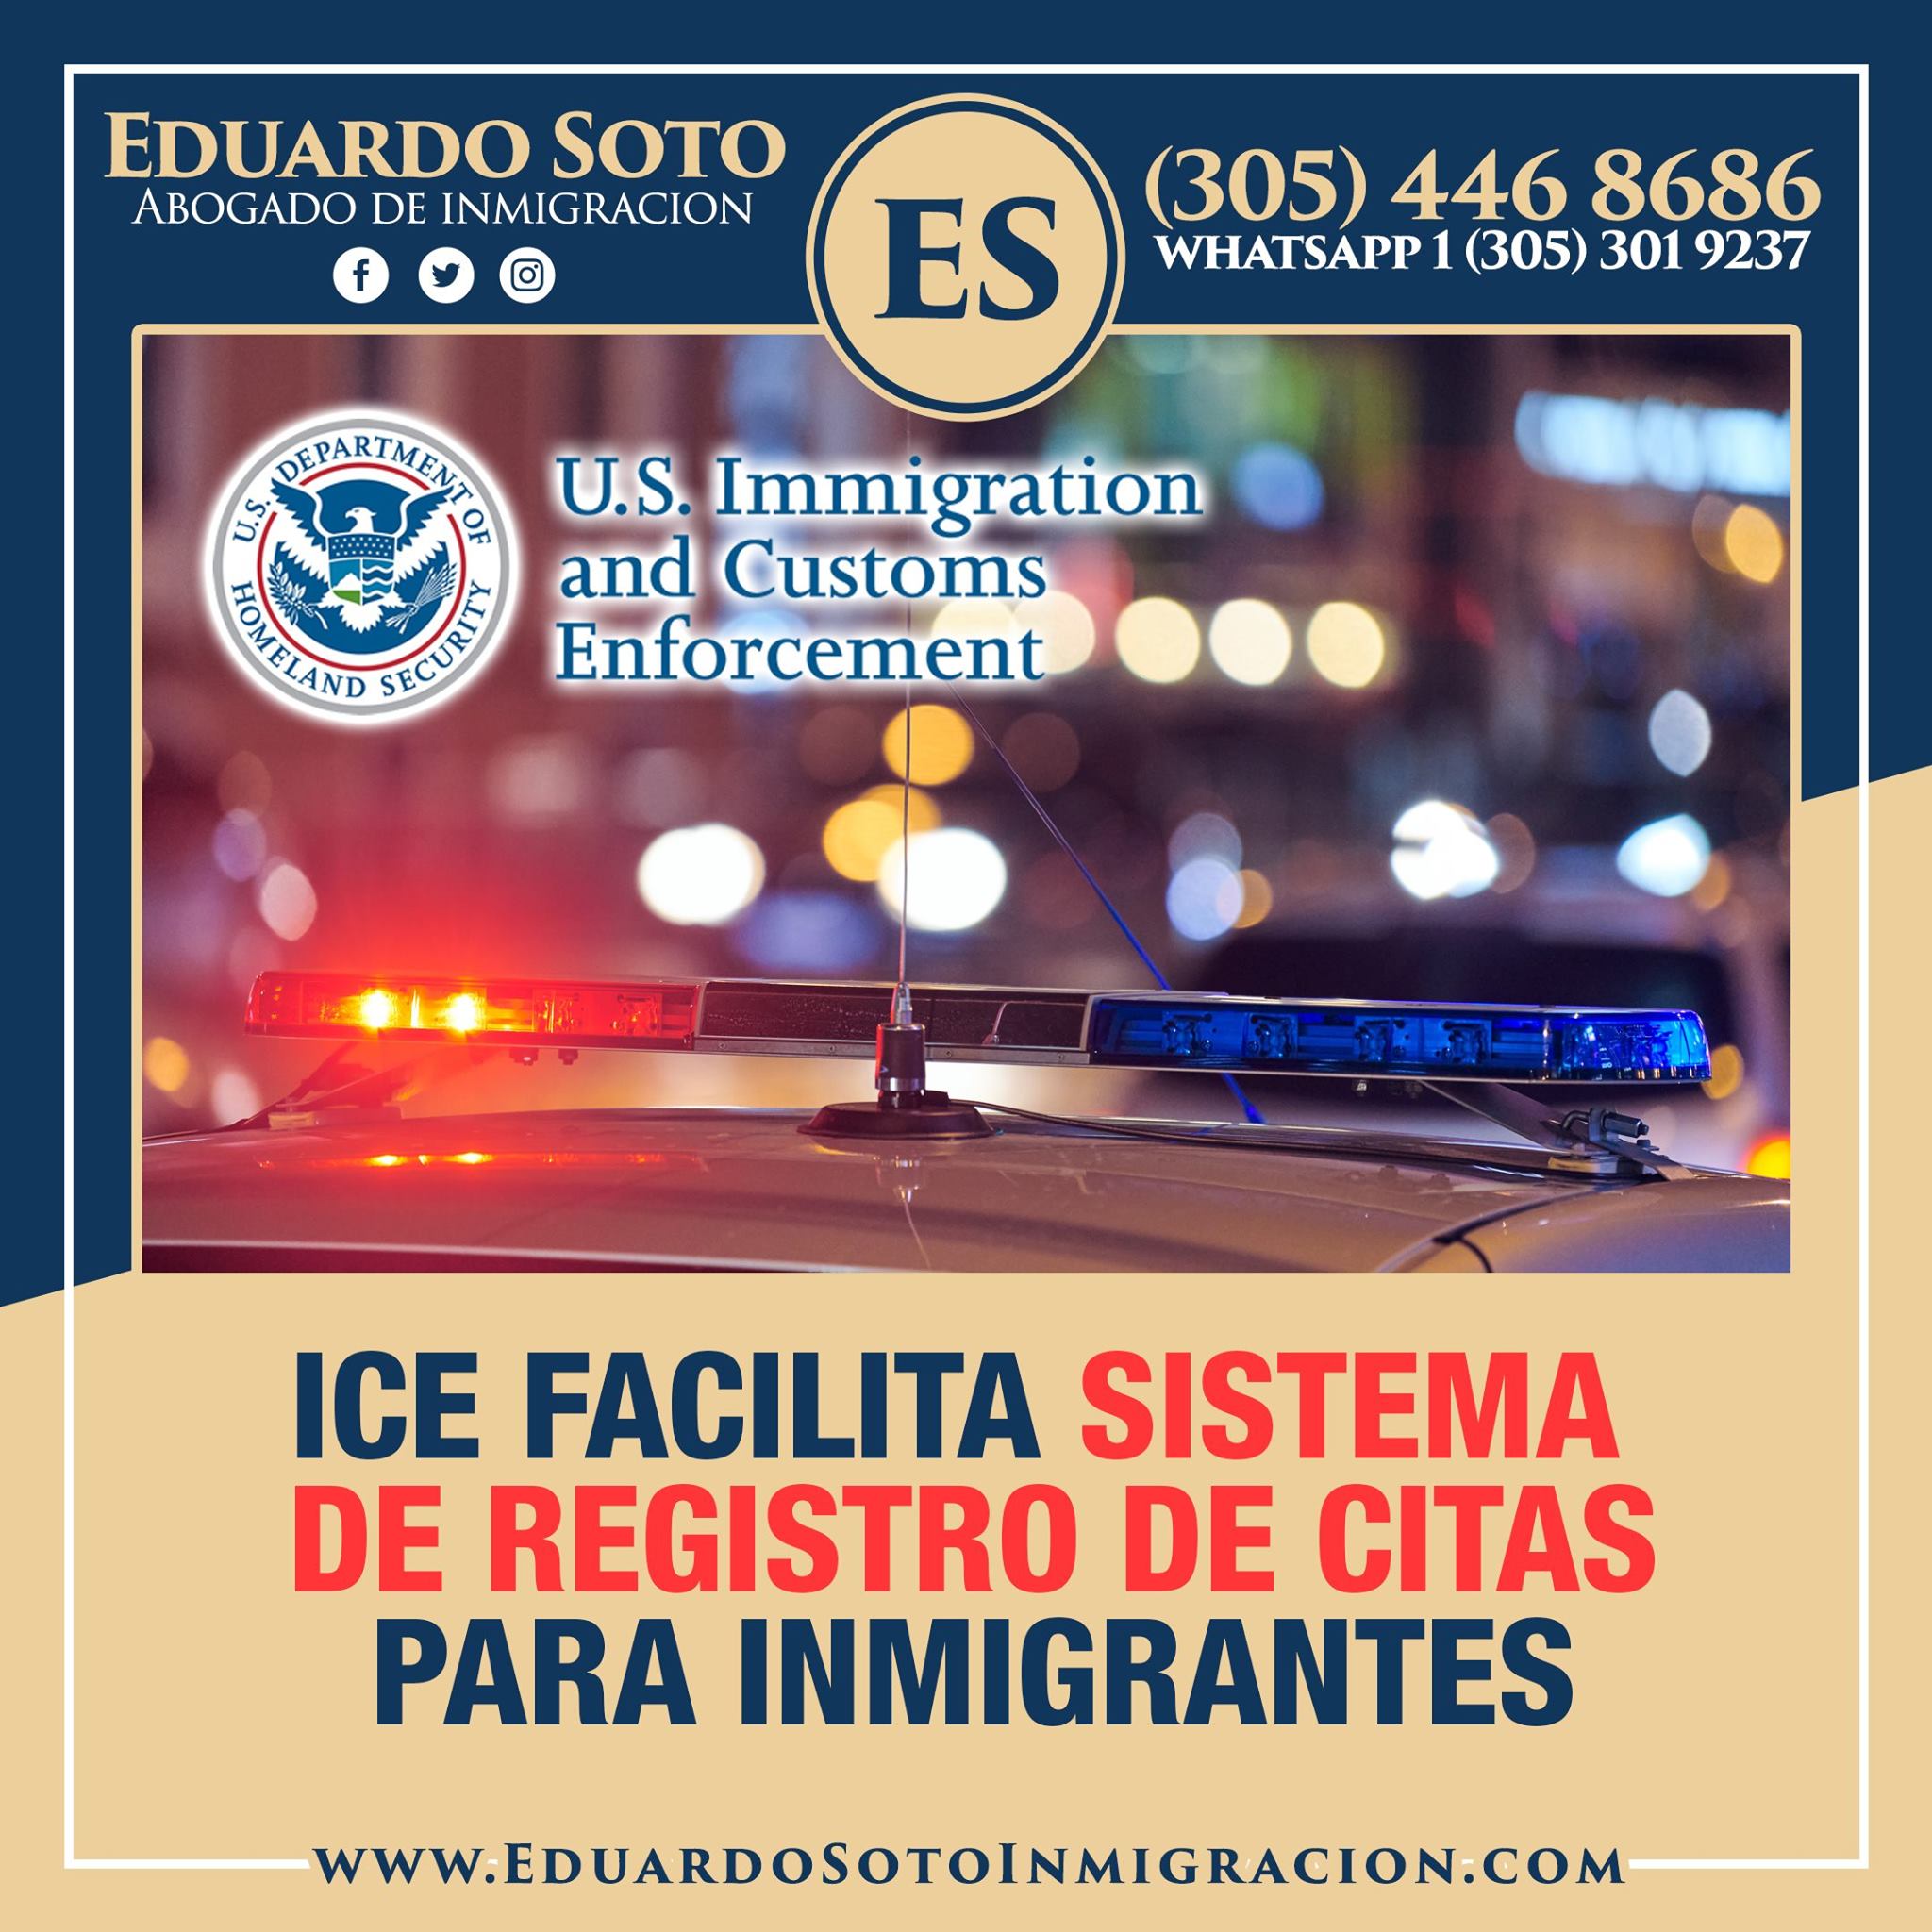 Ice Facilita Sistema De Registro De Citas Para Inmigrantes